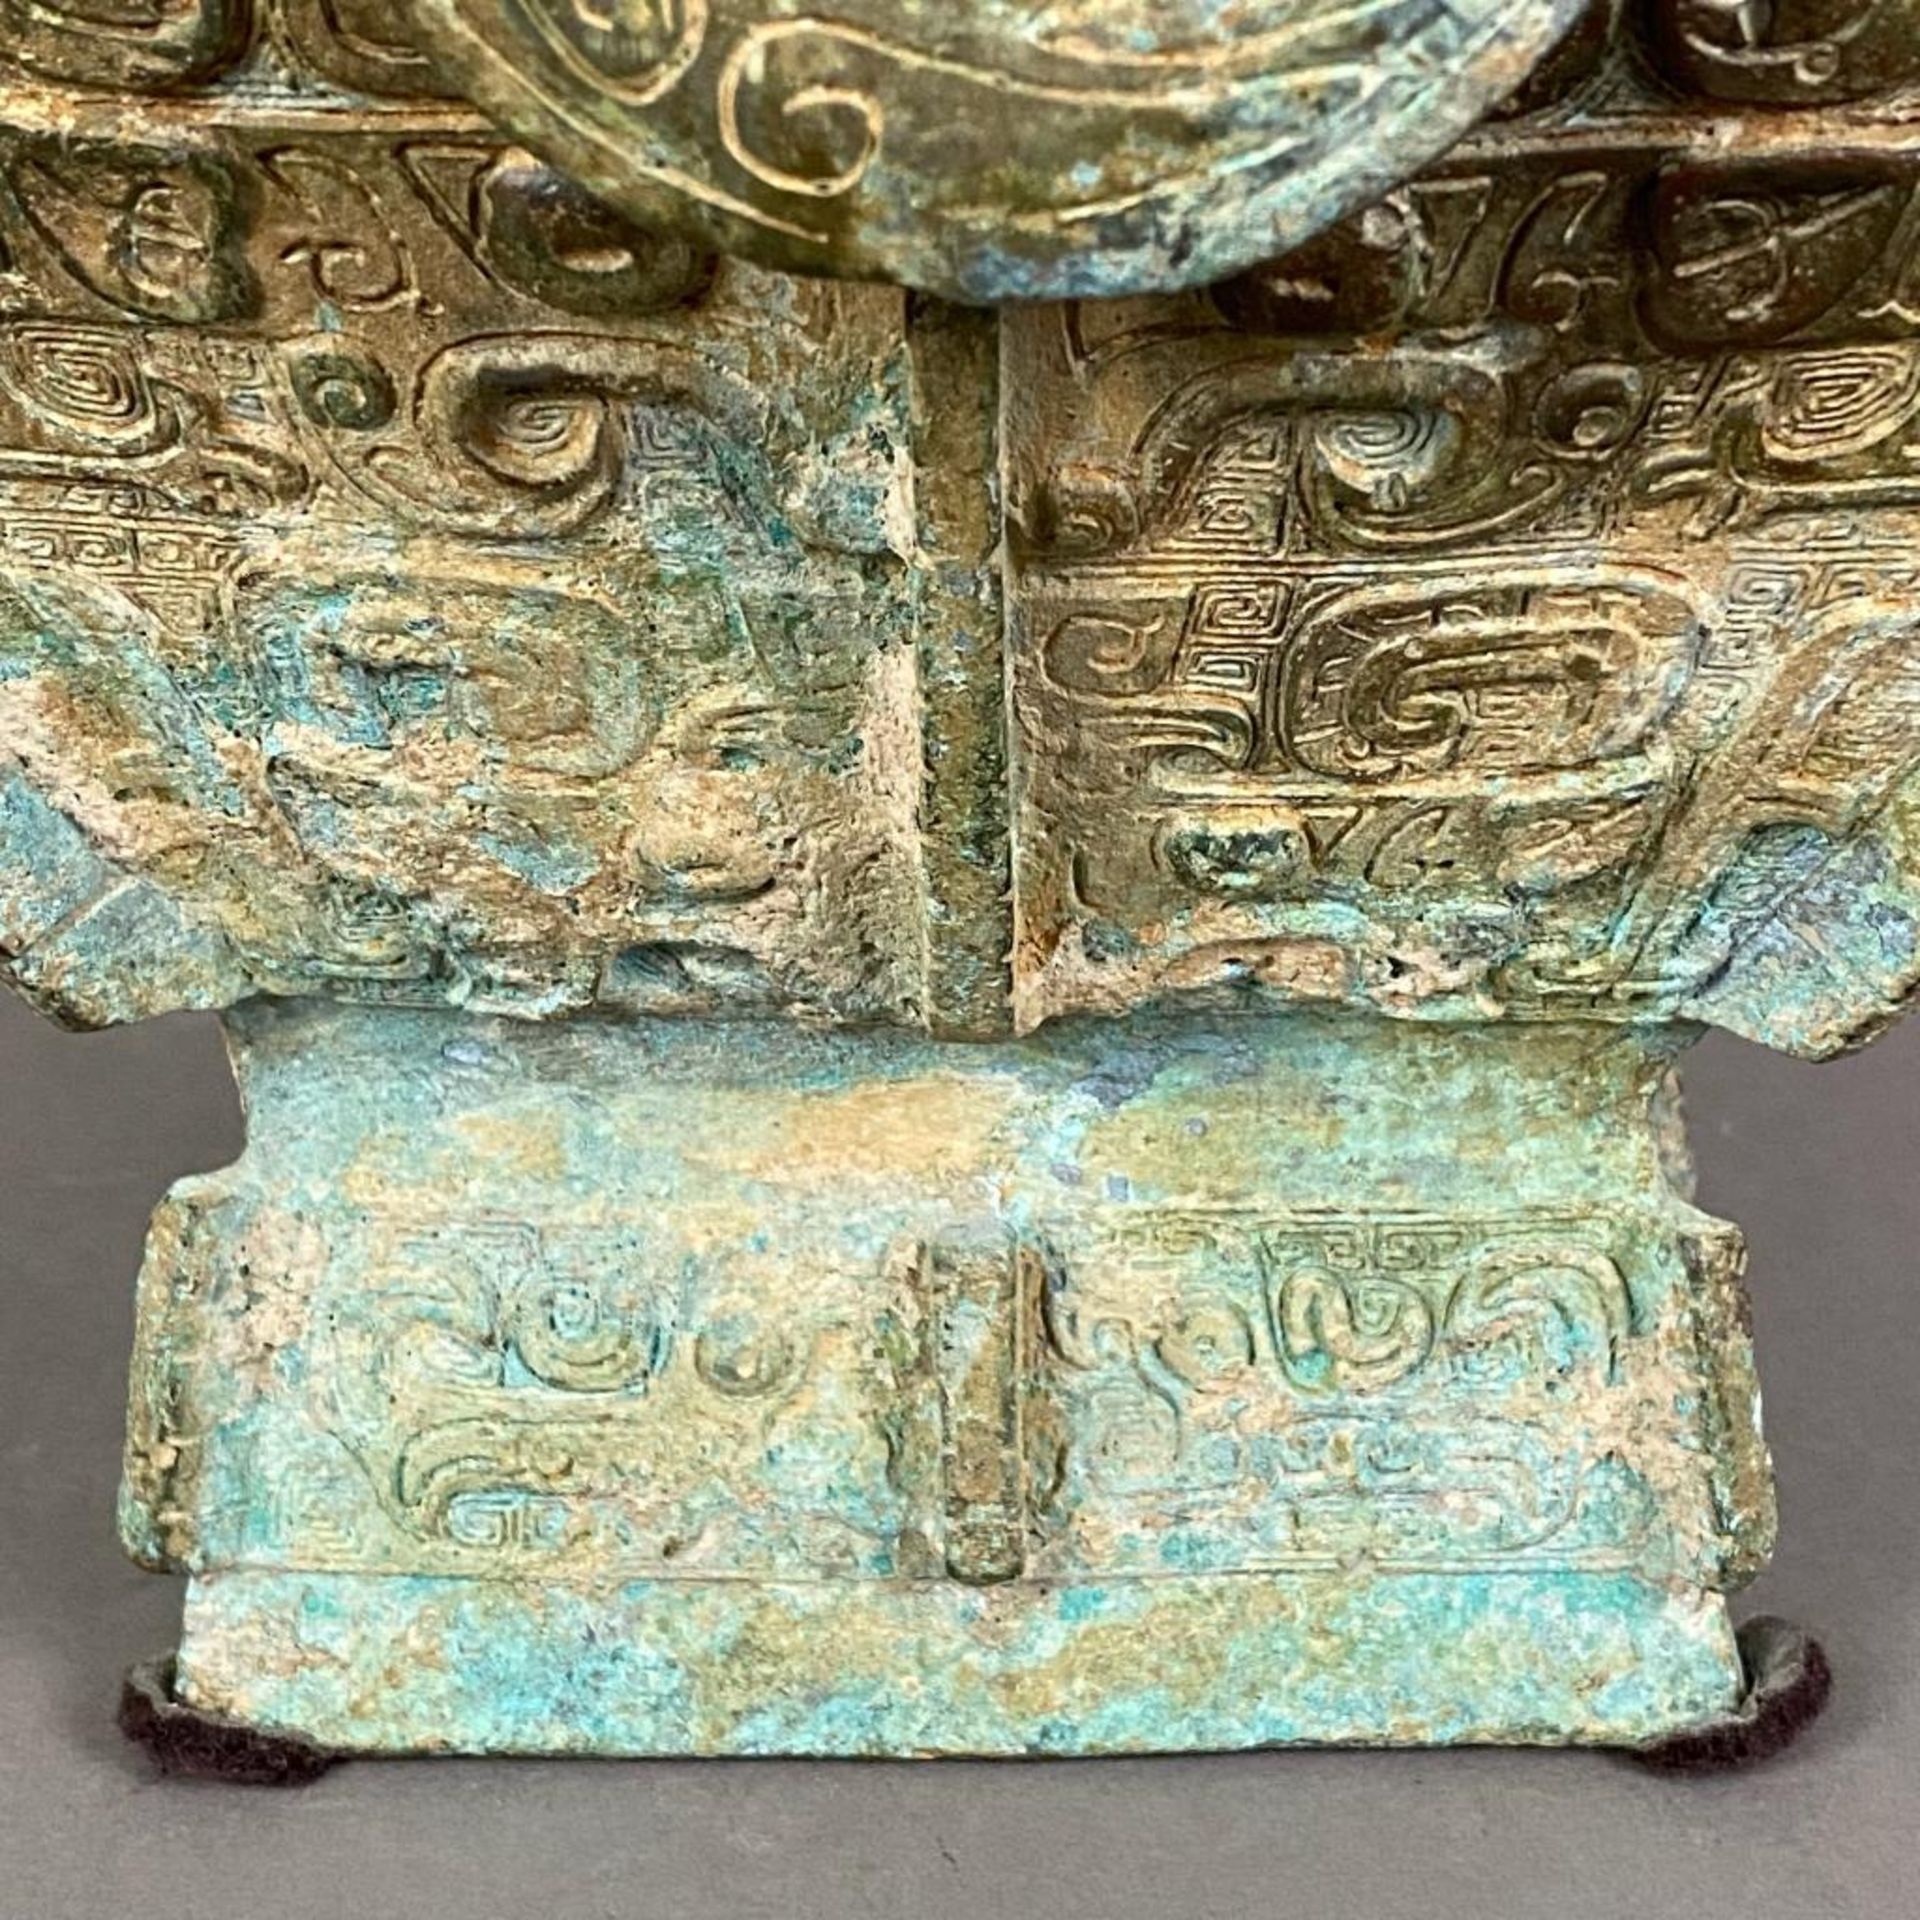 Fanghu-Vase im archaischen Stil - China, grün-braun patinierte Bronze, vierkantige gebauchte Form a - Image 8 of 10